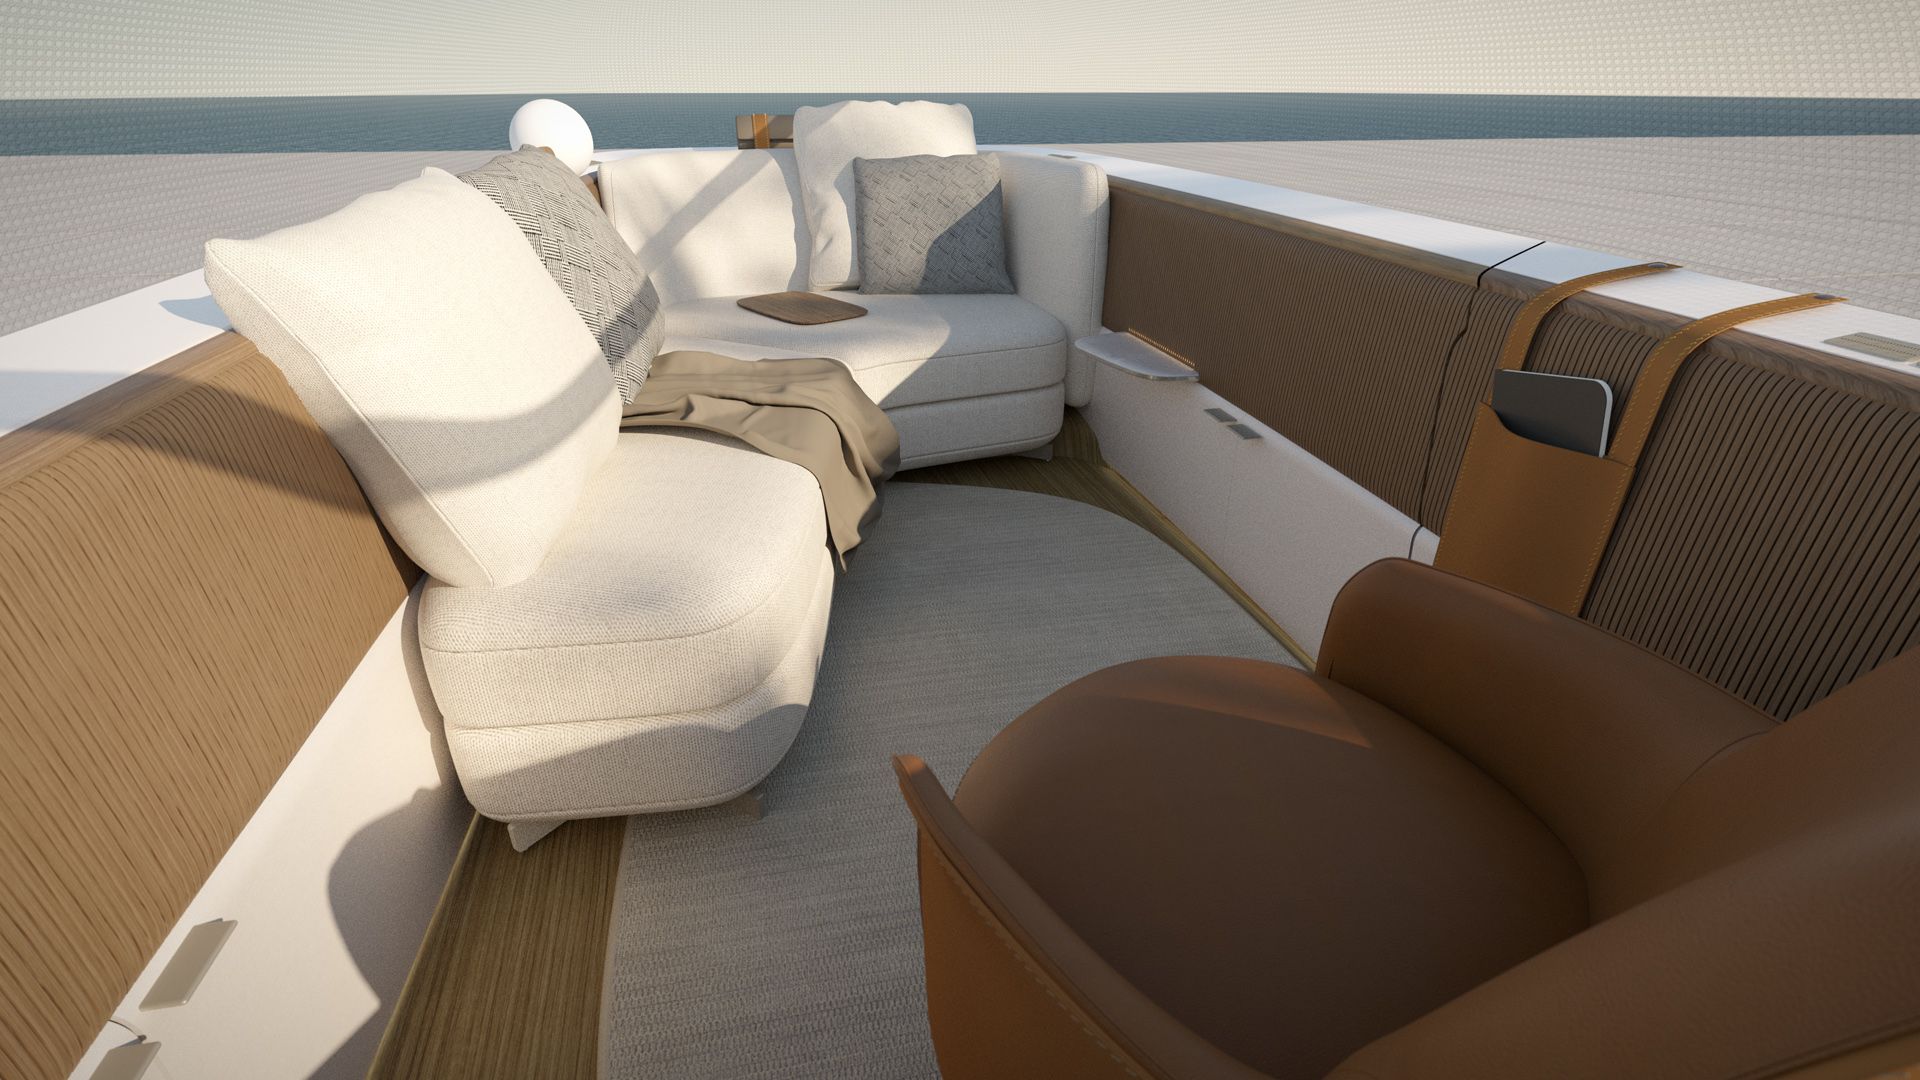 Der Interieur-Entwurf von Poliform für den Audi urbansphere concept zeigt einen gemütlichen Innenraum verschiedenen Sitzelementen.